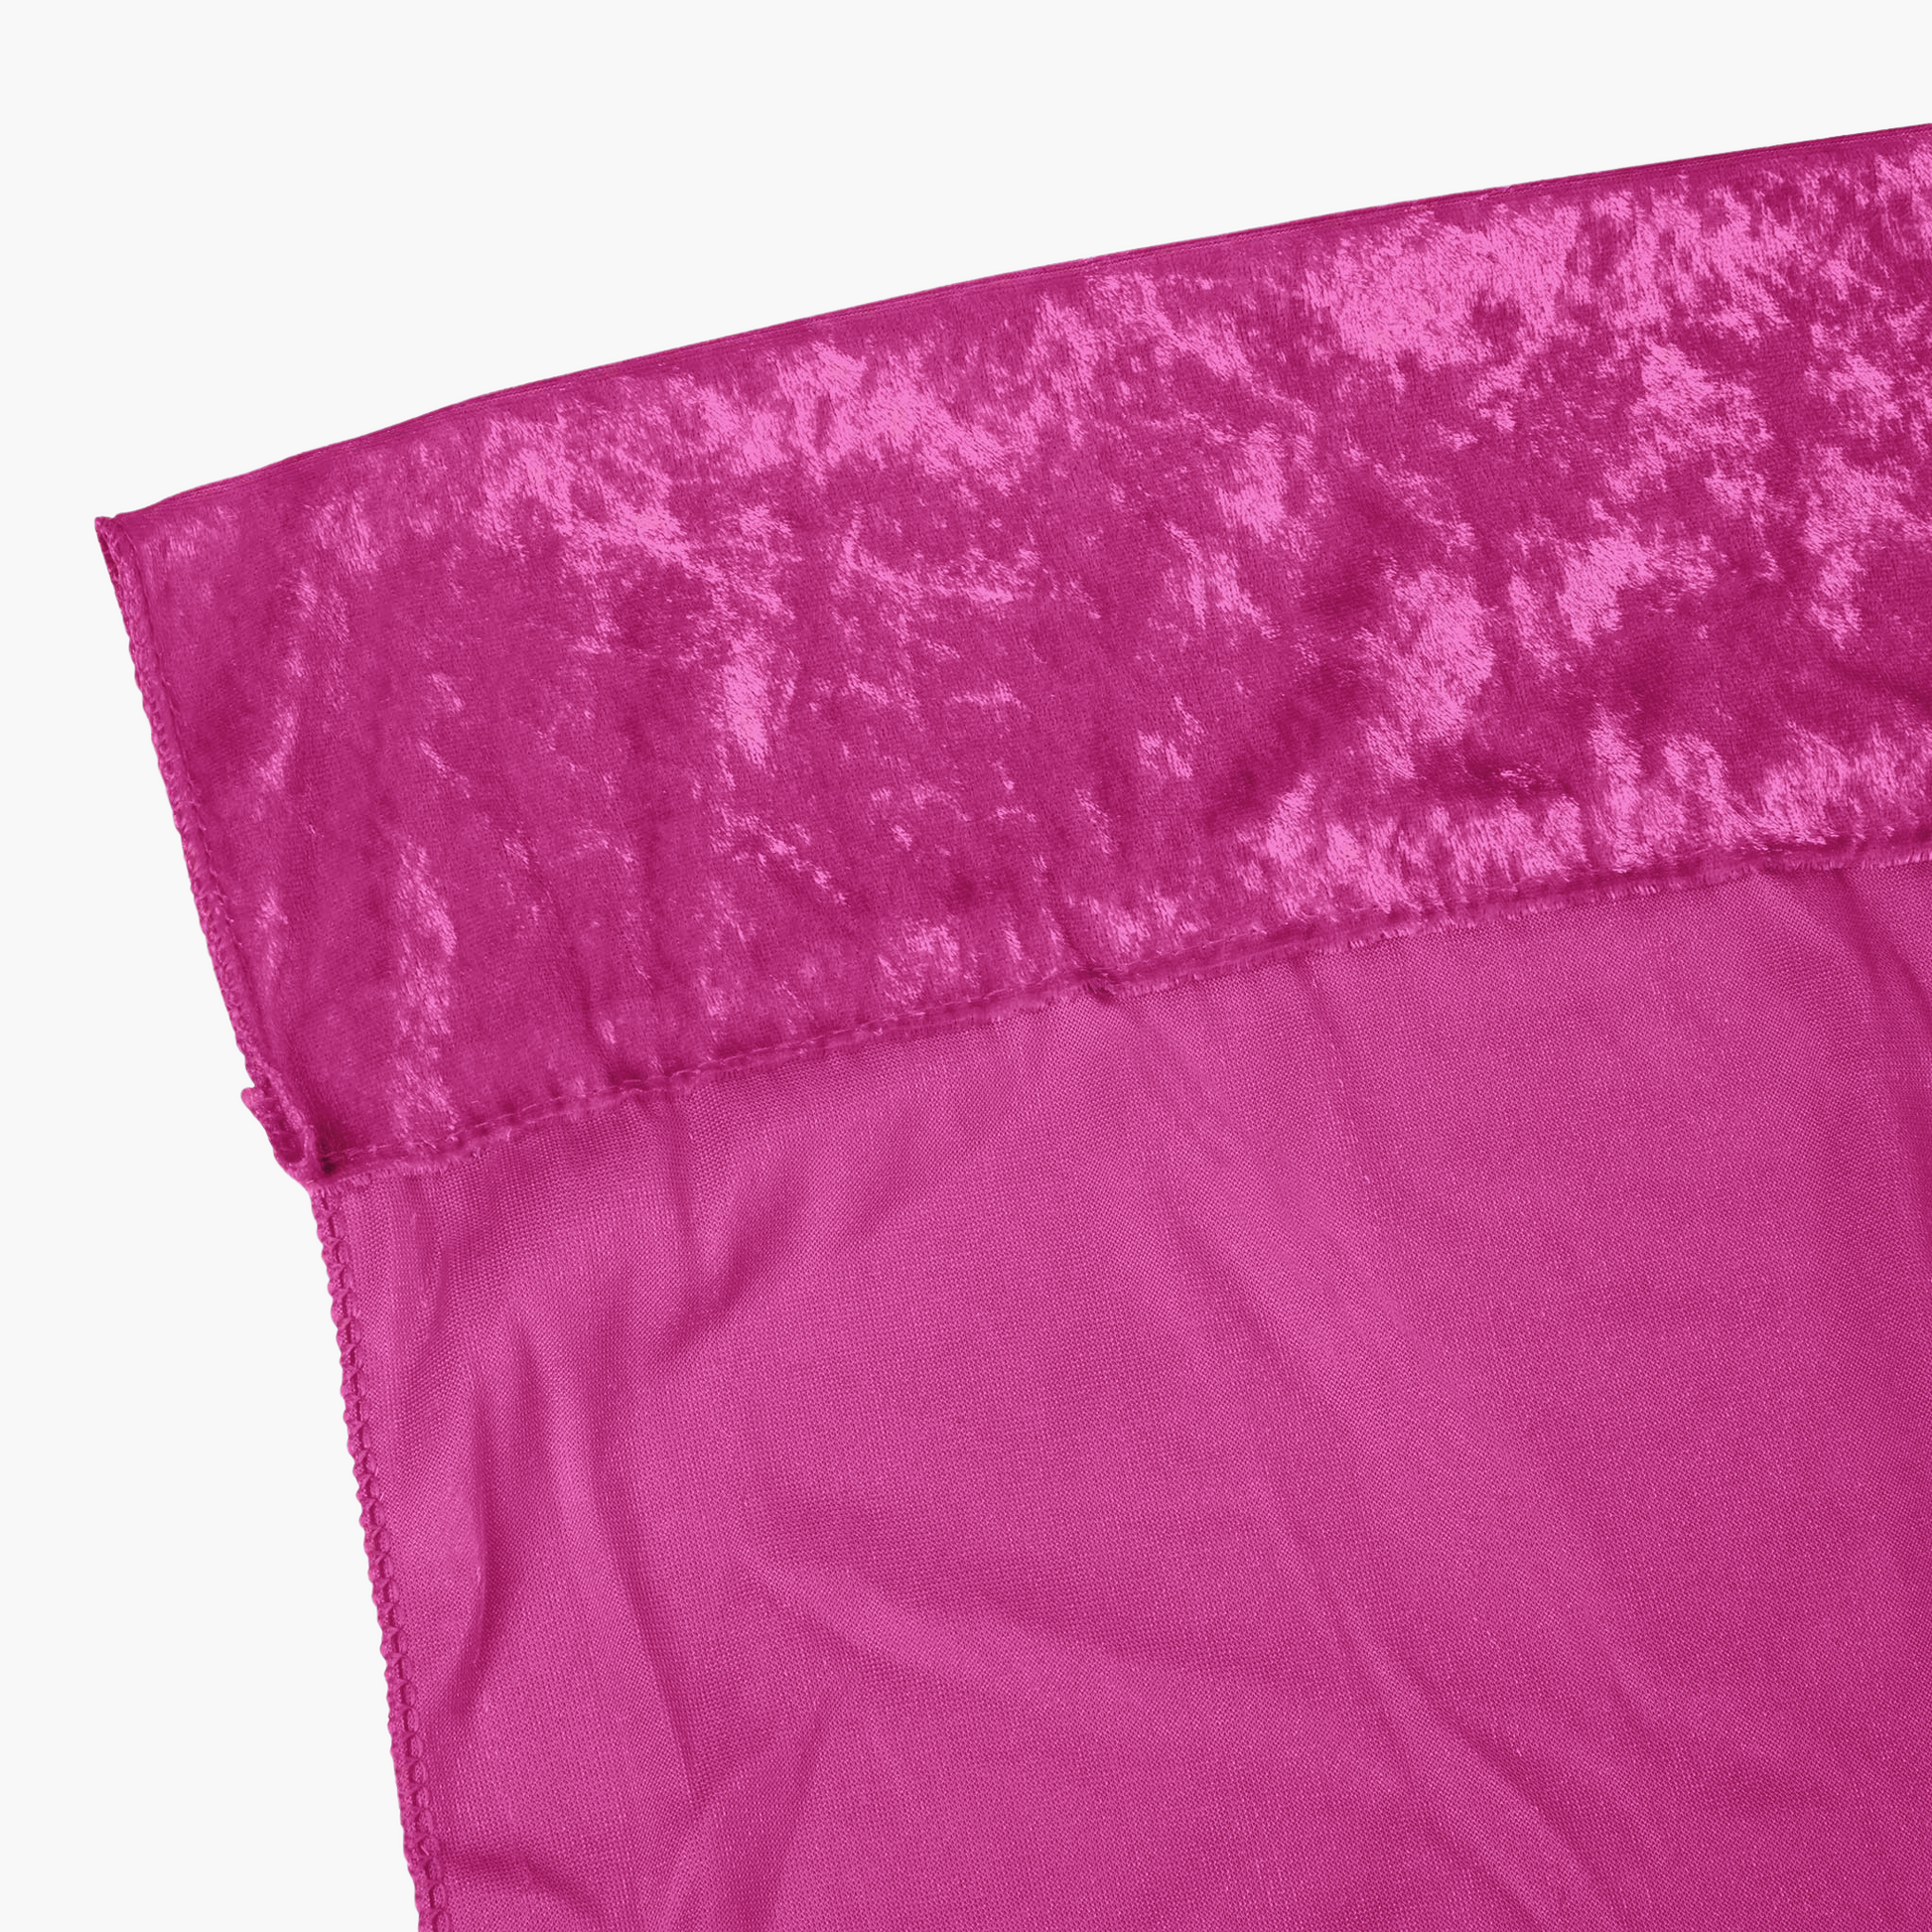 Velvet 8ft H x 52" W Drape/Backdrop Curtain Panel - Magenta